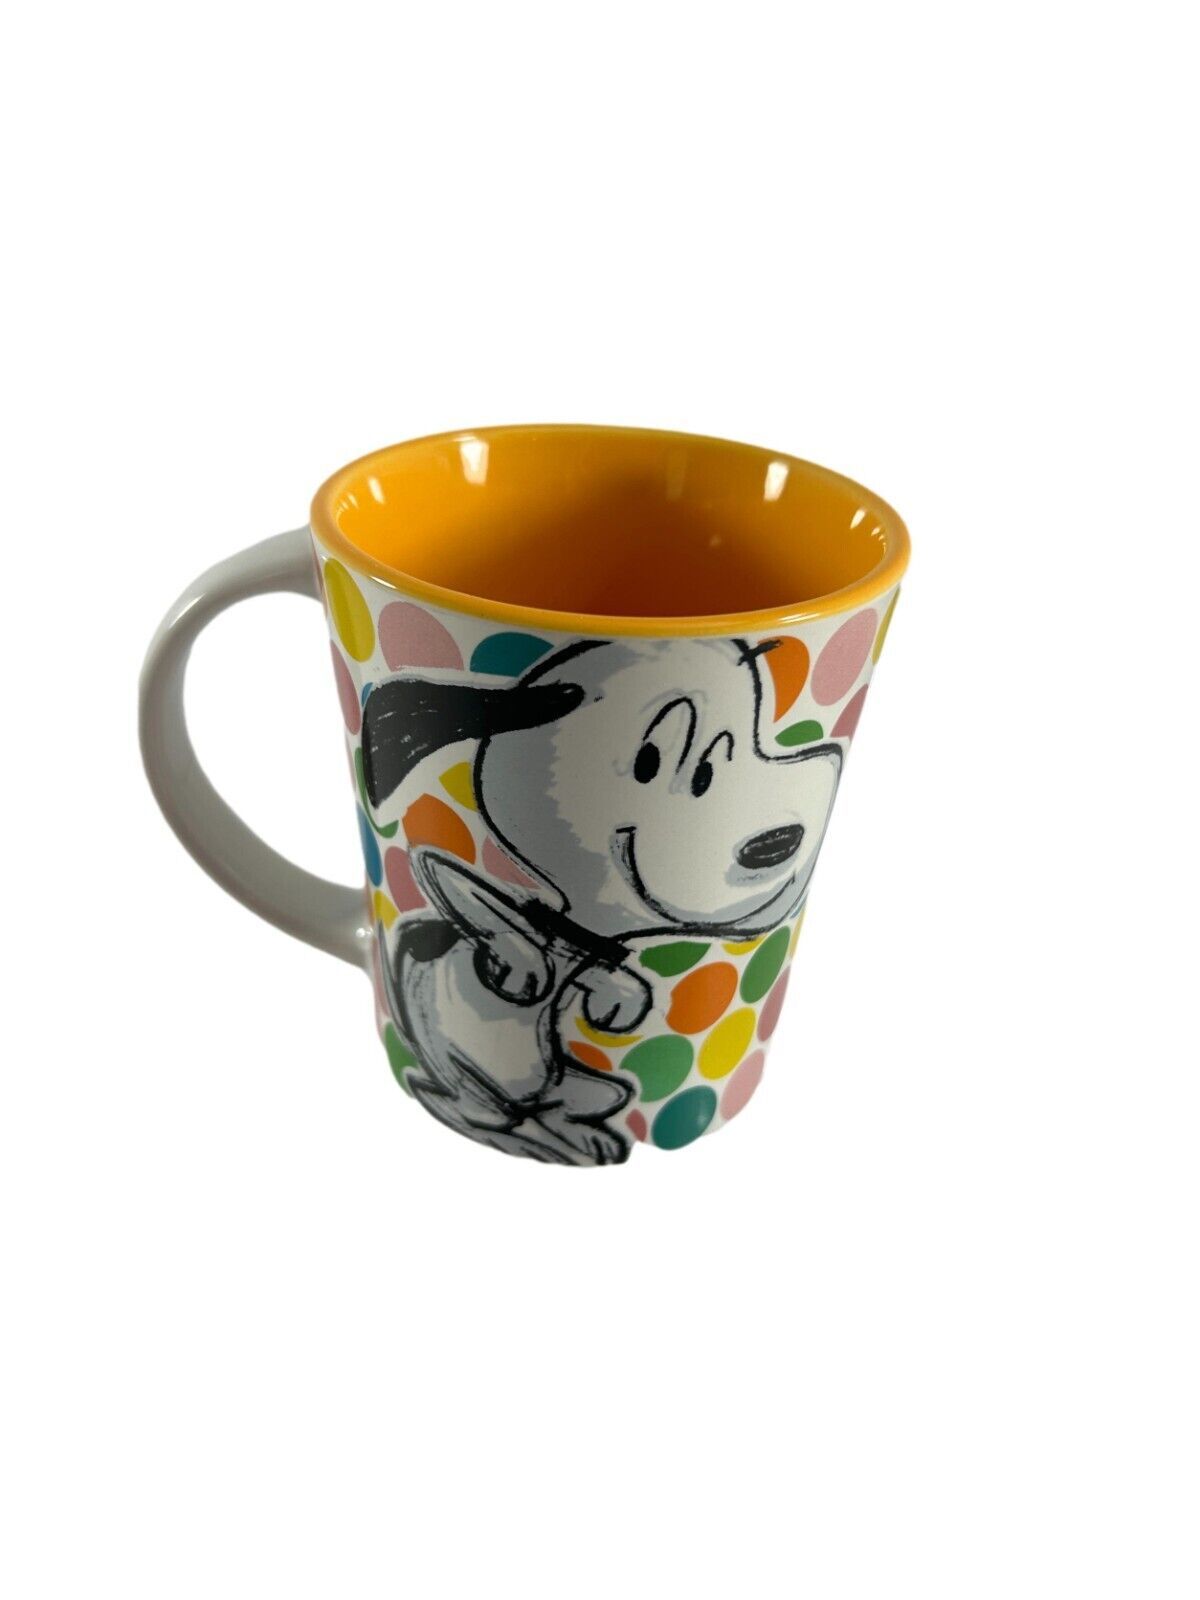 Peanuts Snoopy Coffee Tea Mug Dancing Dog 15oz Polka Dot Pop Art Gibson - $14.85